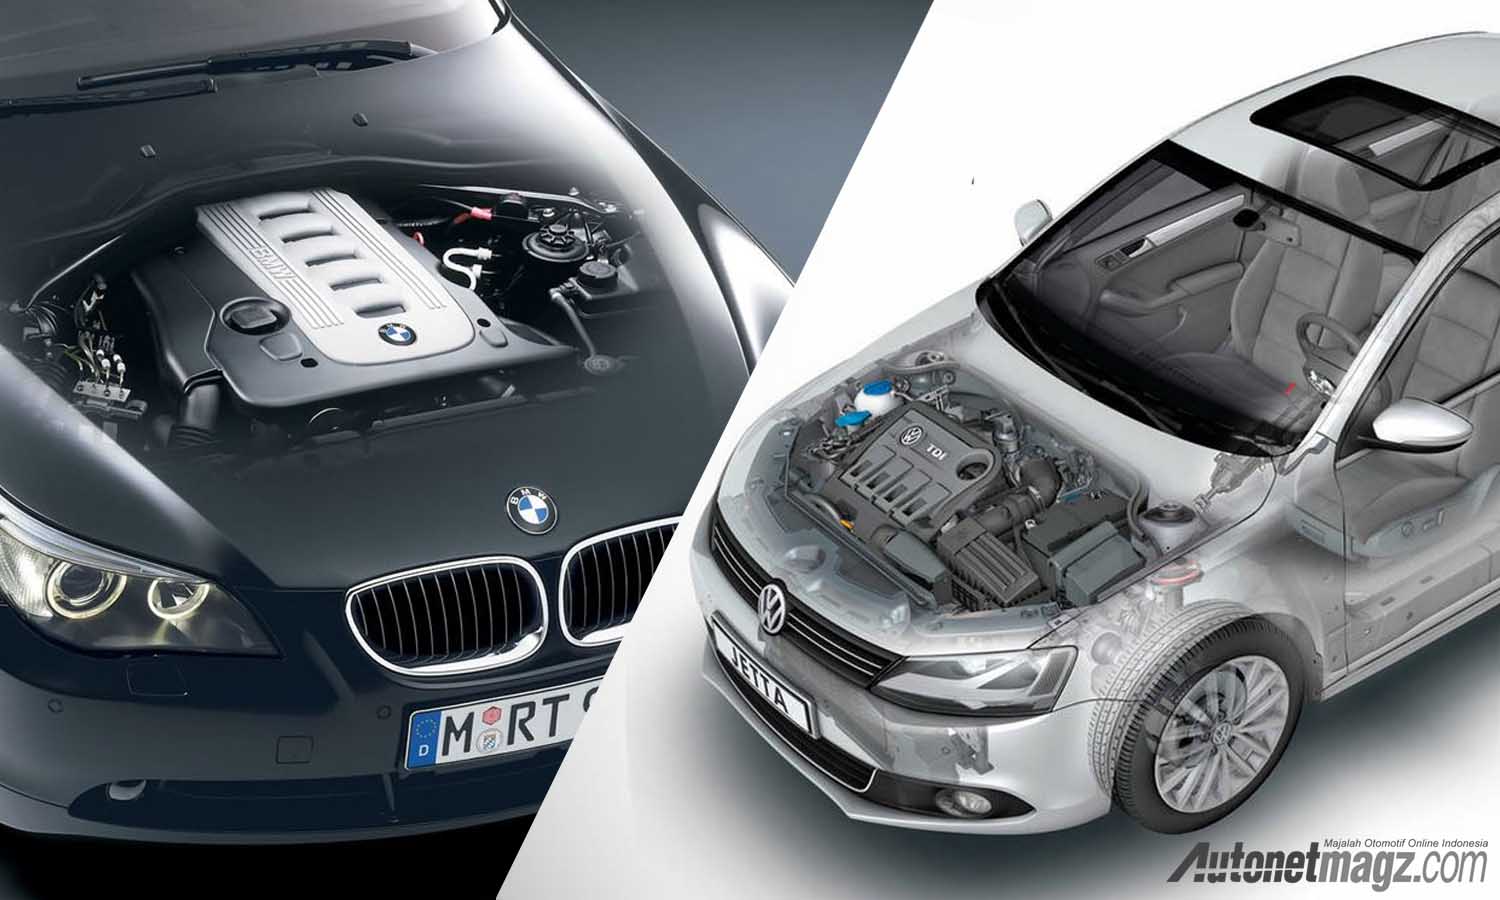 Berita, diesel bmw vw mercy opel recall: BMW, VW, Mercedes-Benz & Opel Recall 2,5 Juta Unit Mobil Diesel Di Jerman